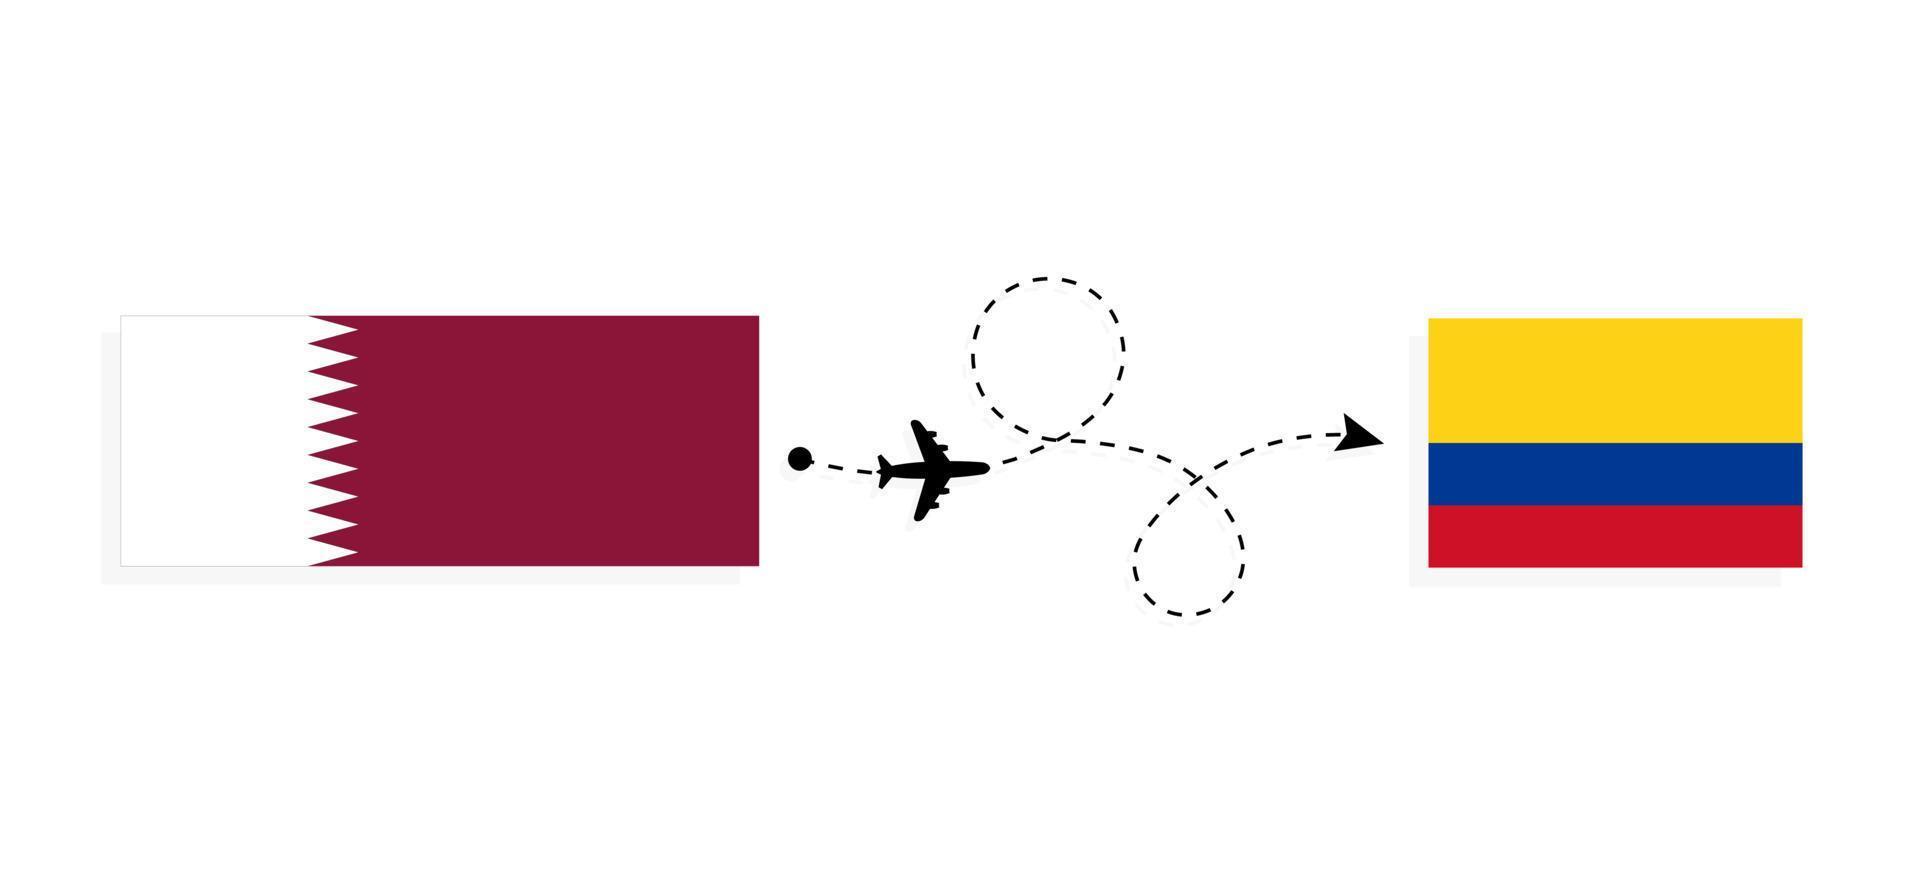 vuelo y viaje de qatar a colombia por concepto de viaje en avión de pasajeros vector